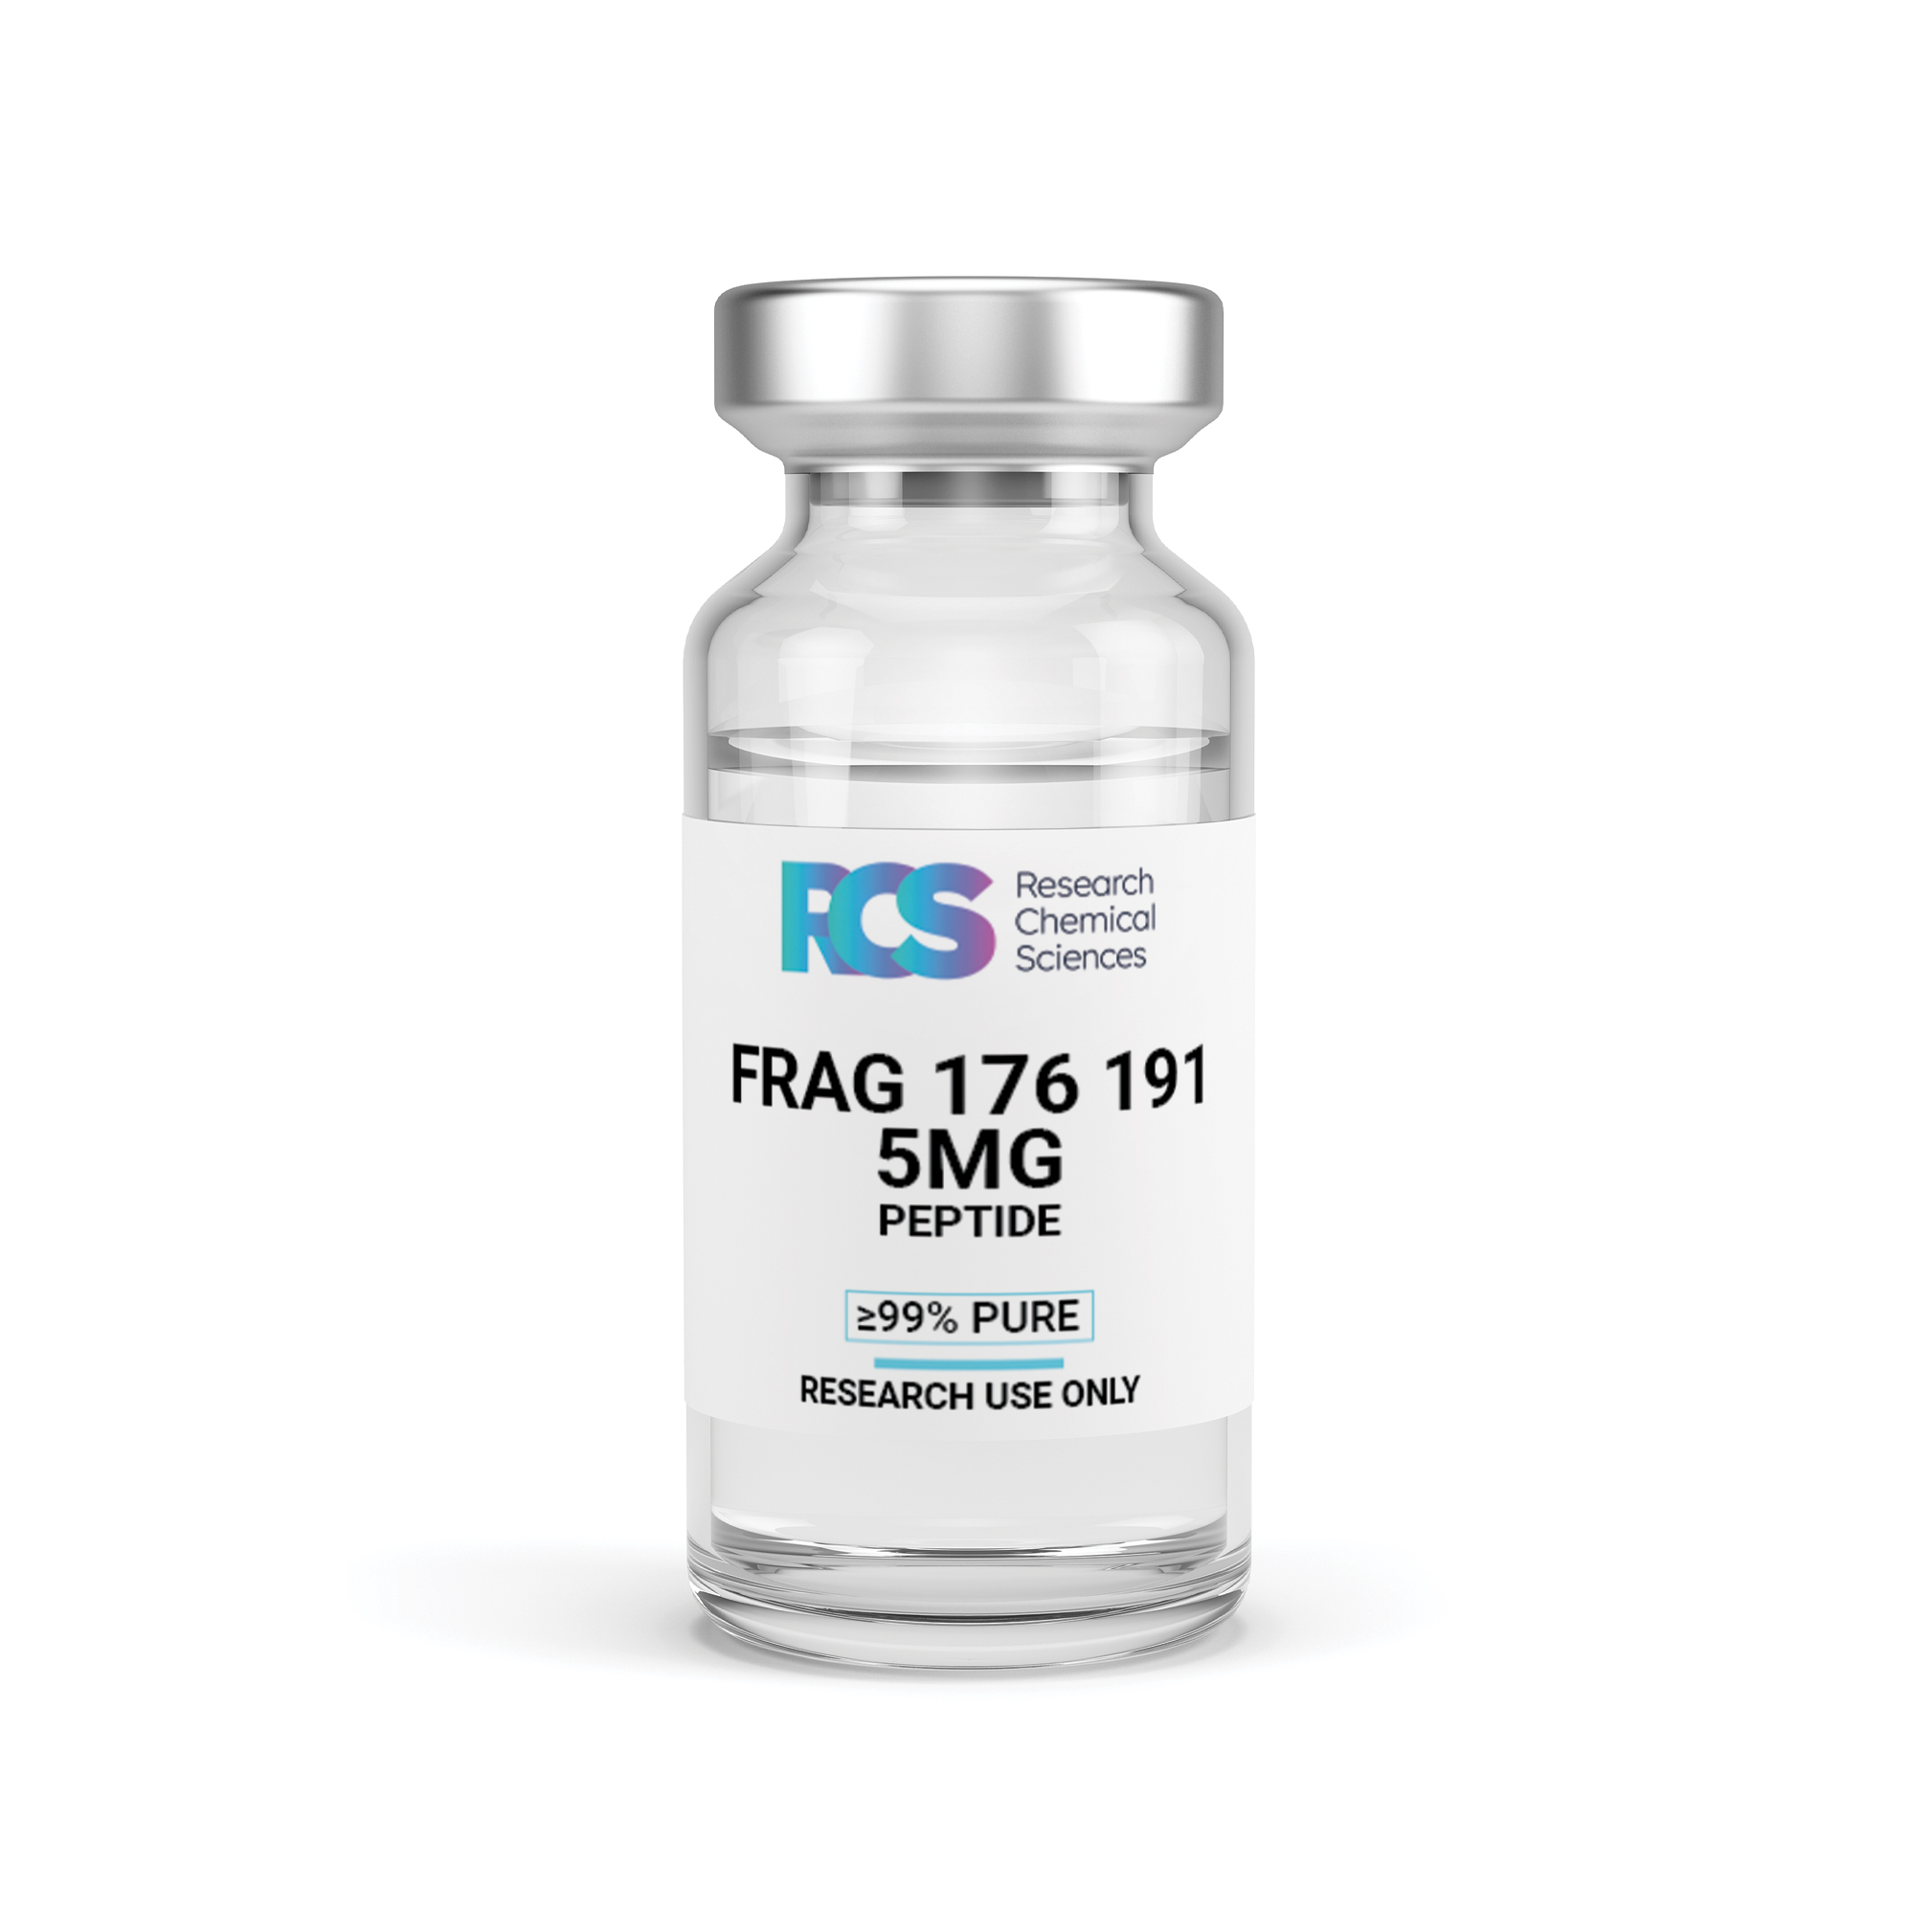 RCS-Frag-176-191-Peptide-5MG-Side-1